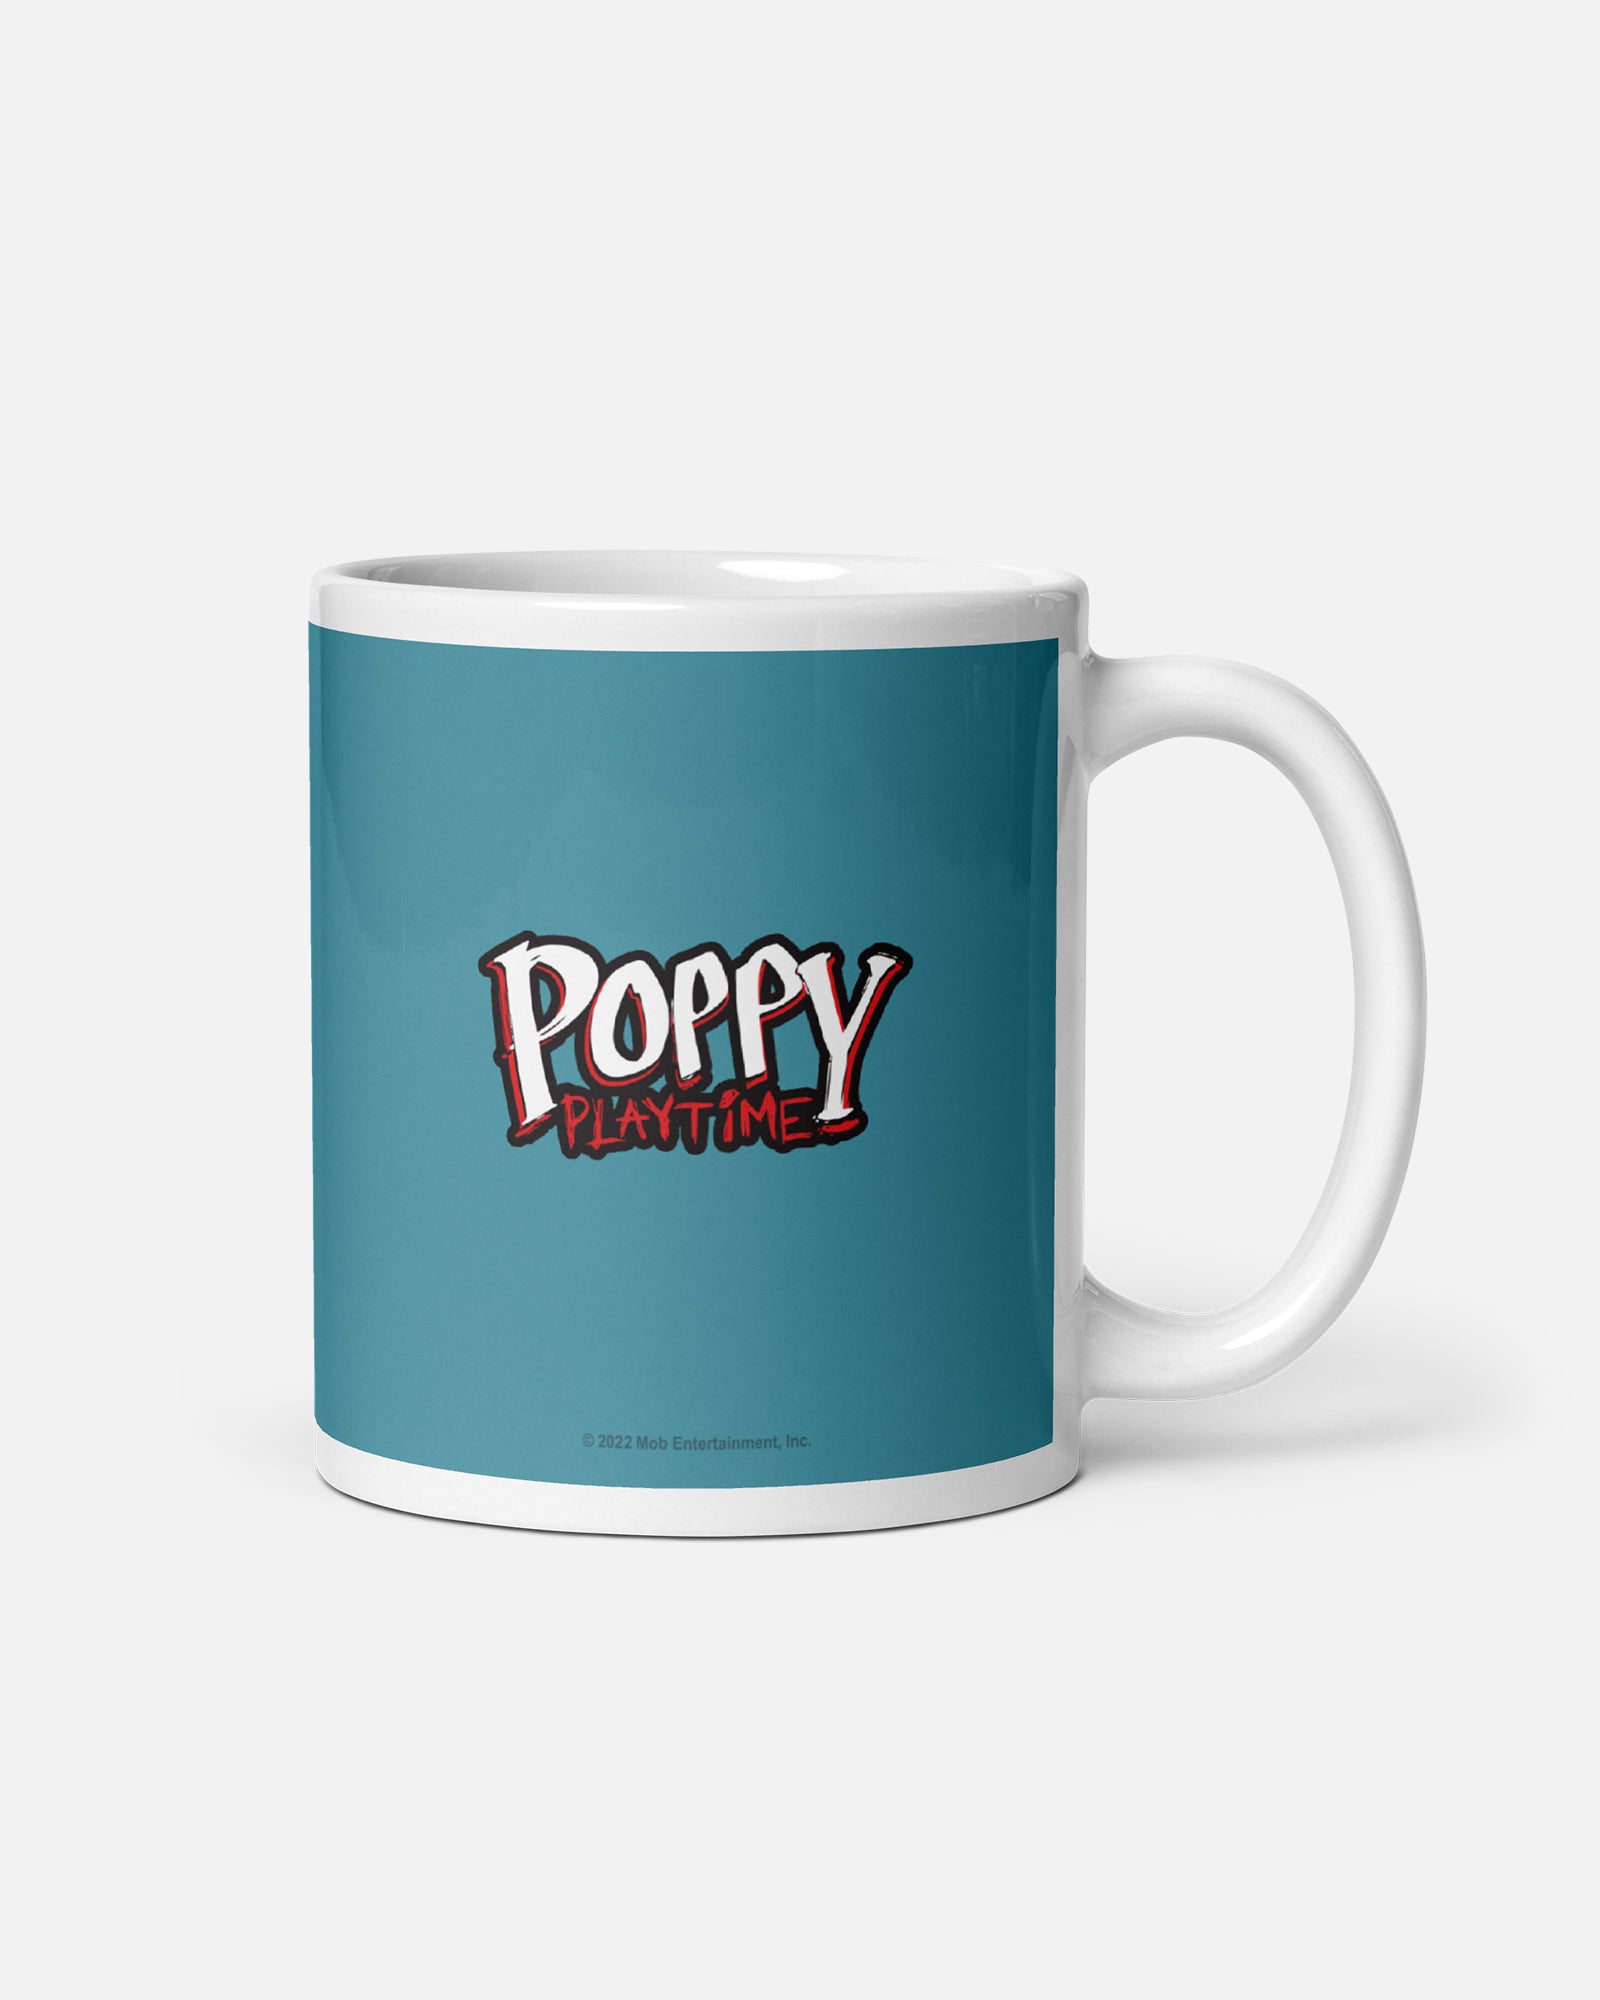 boxy boo mug. text: poppy playtime